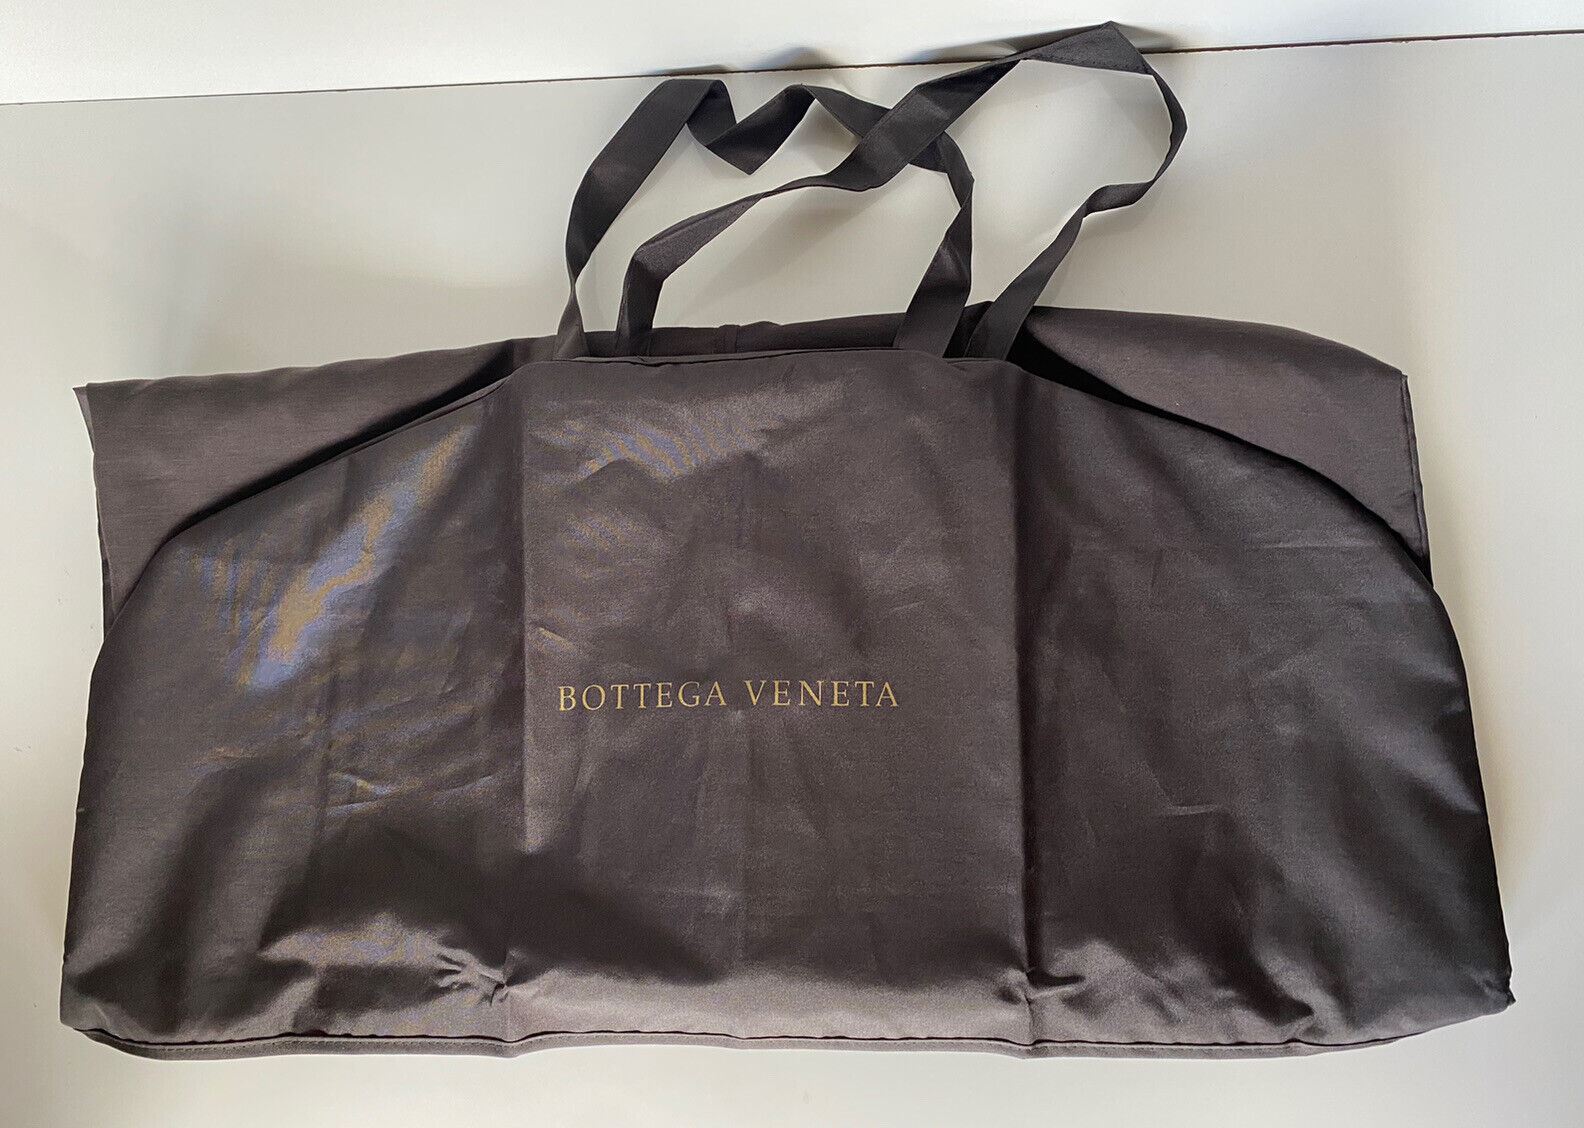 Neuer Bottega Veneta Mantel/Suite/Kleider-Kleidersack, Braun, 54,5" L x 27" B 